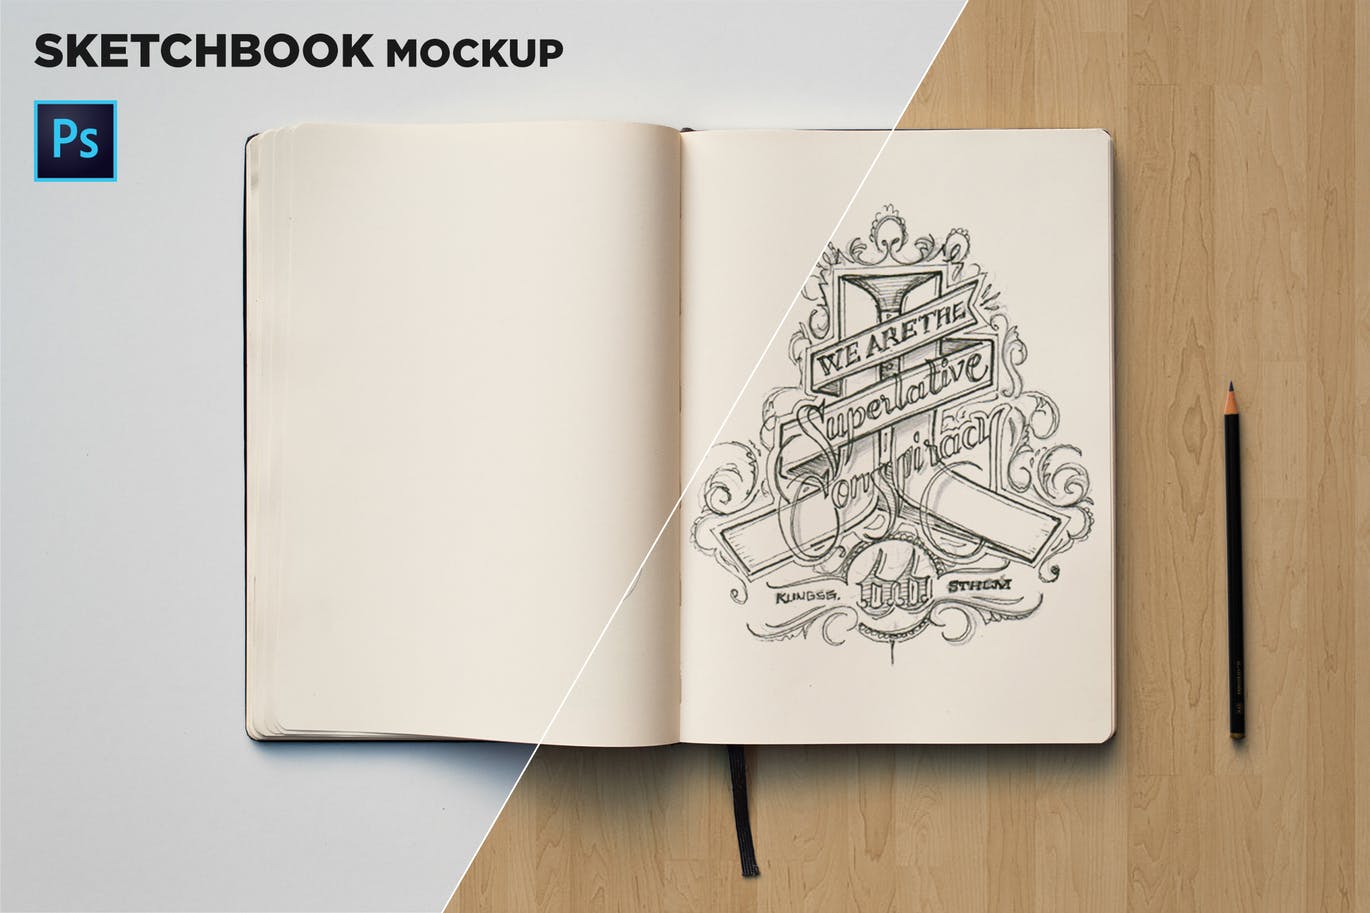 素描本内页设计/艺术作品展示顶视图样机大洋岛精选 Sketchbook Mockup Top View插图